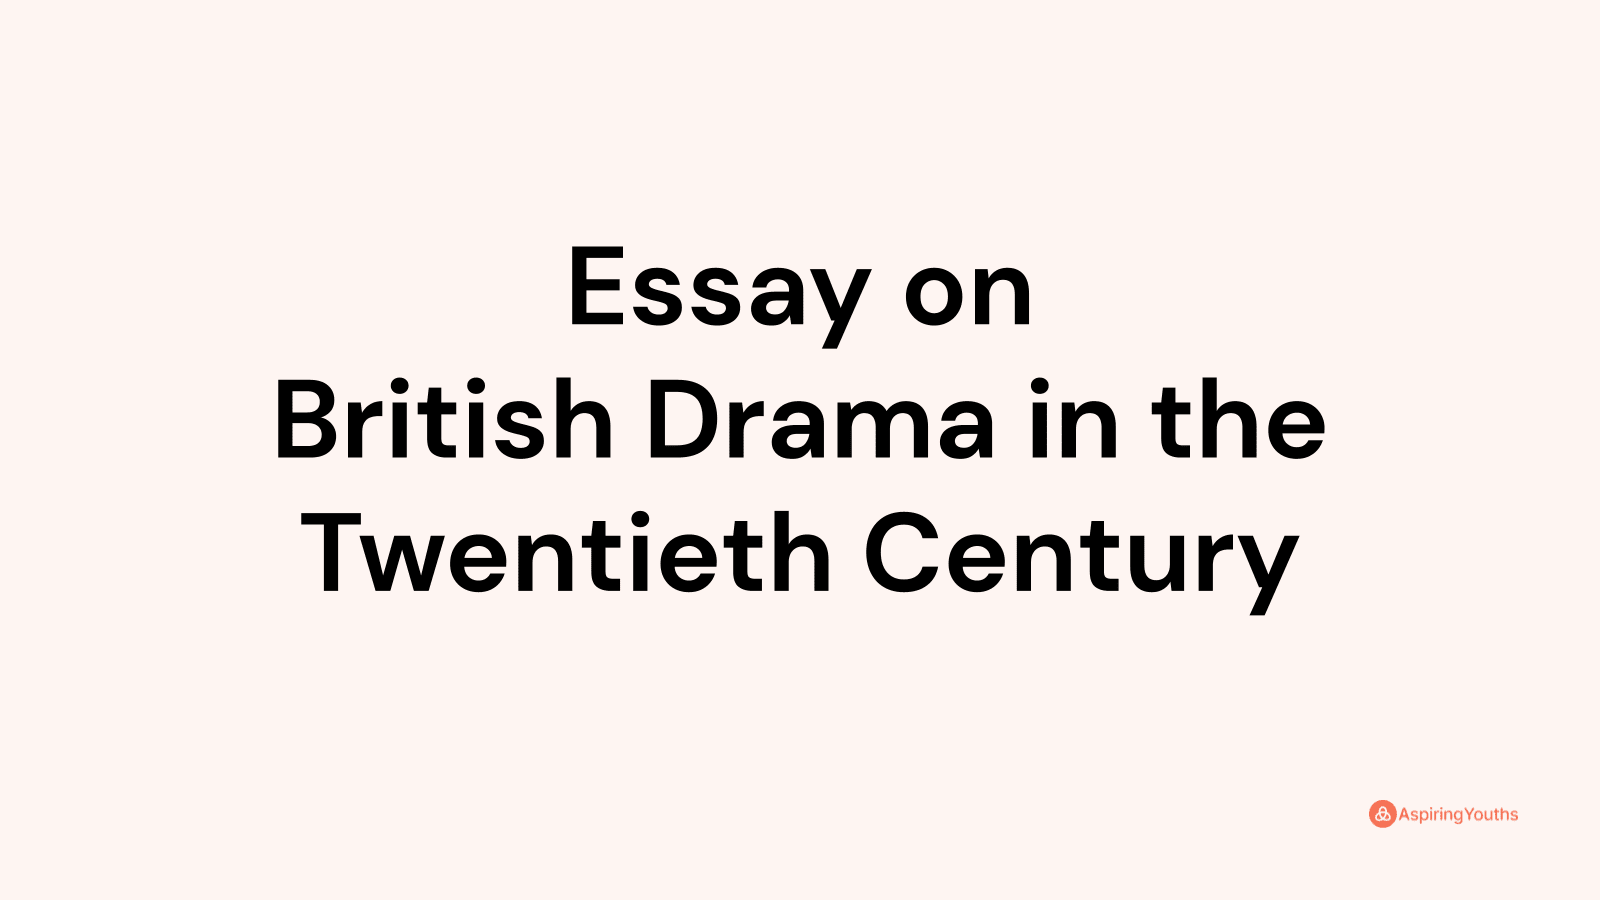 an essay on british drama in the twentieth century